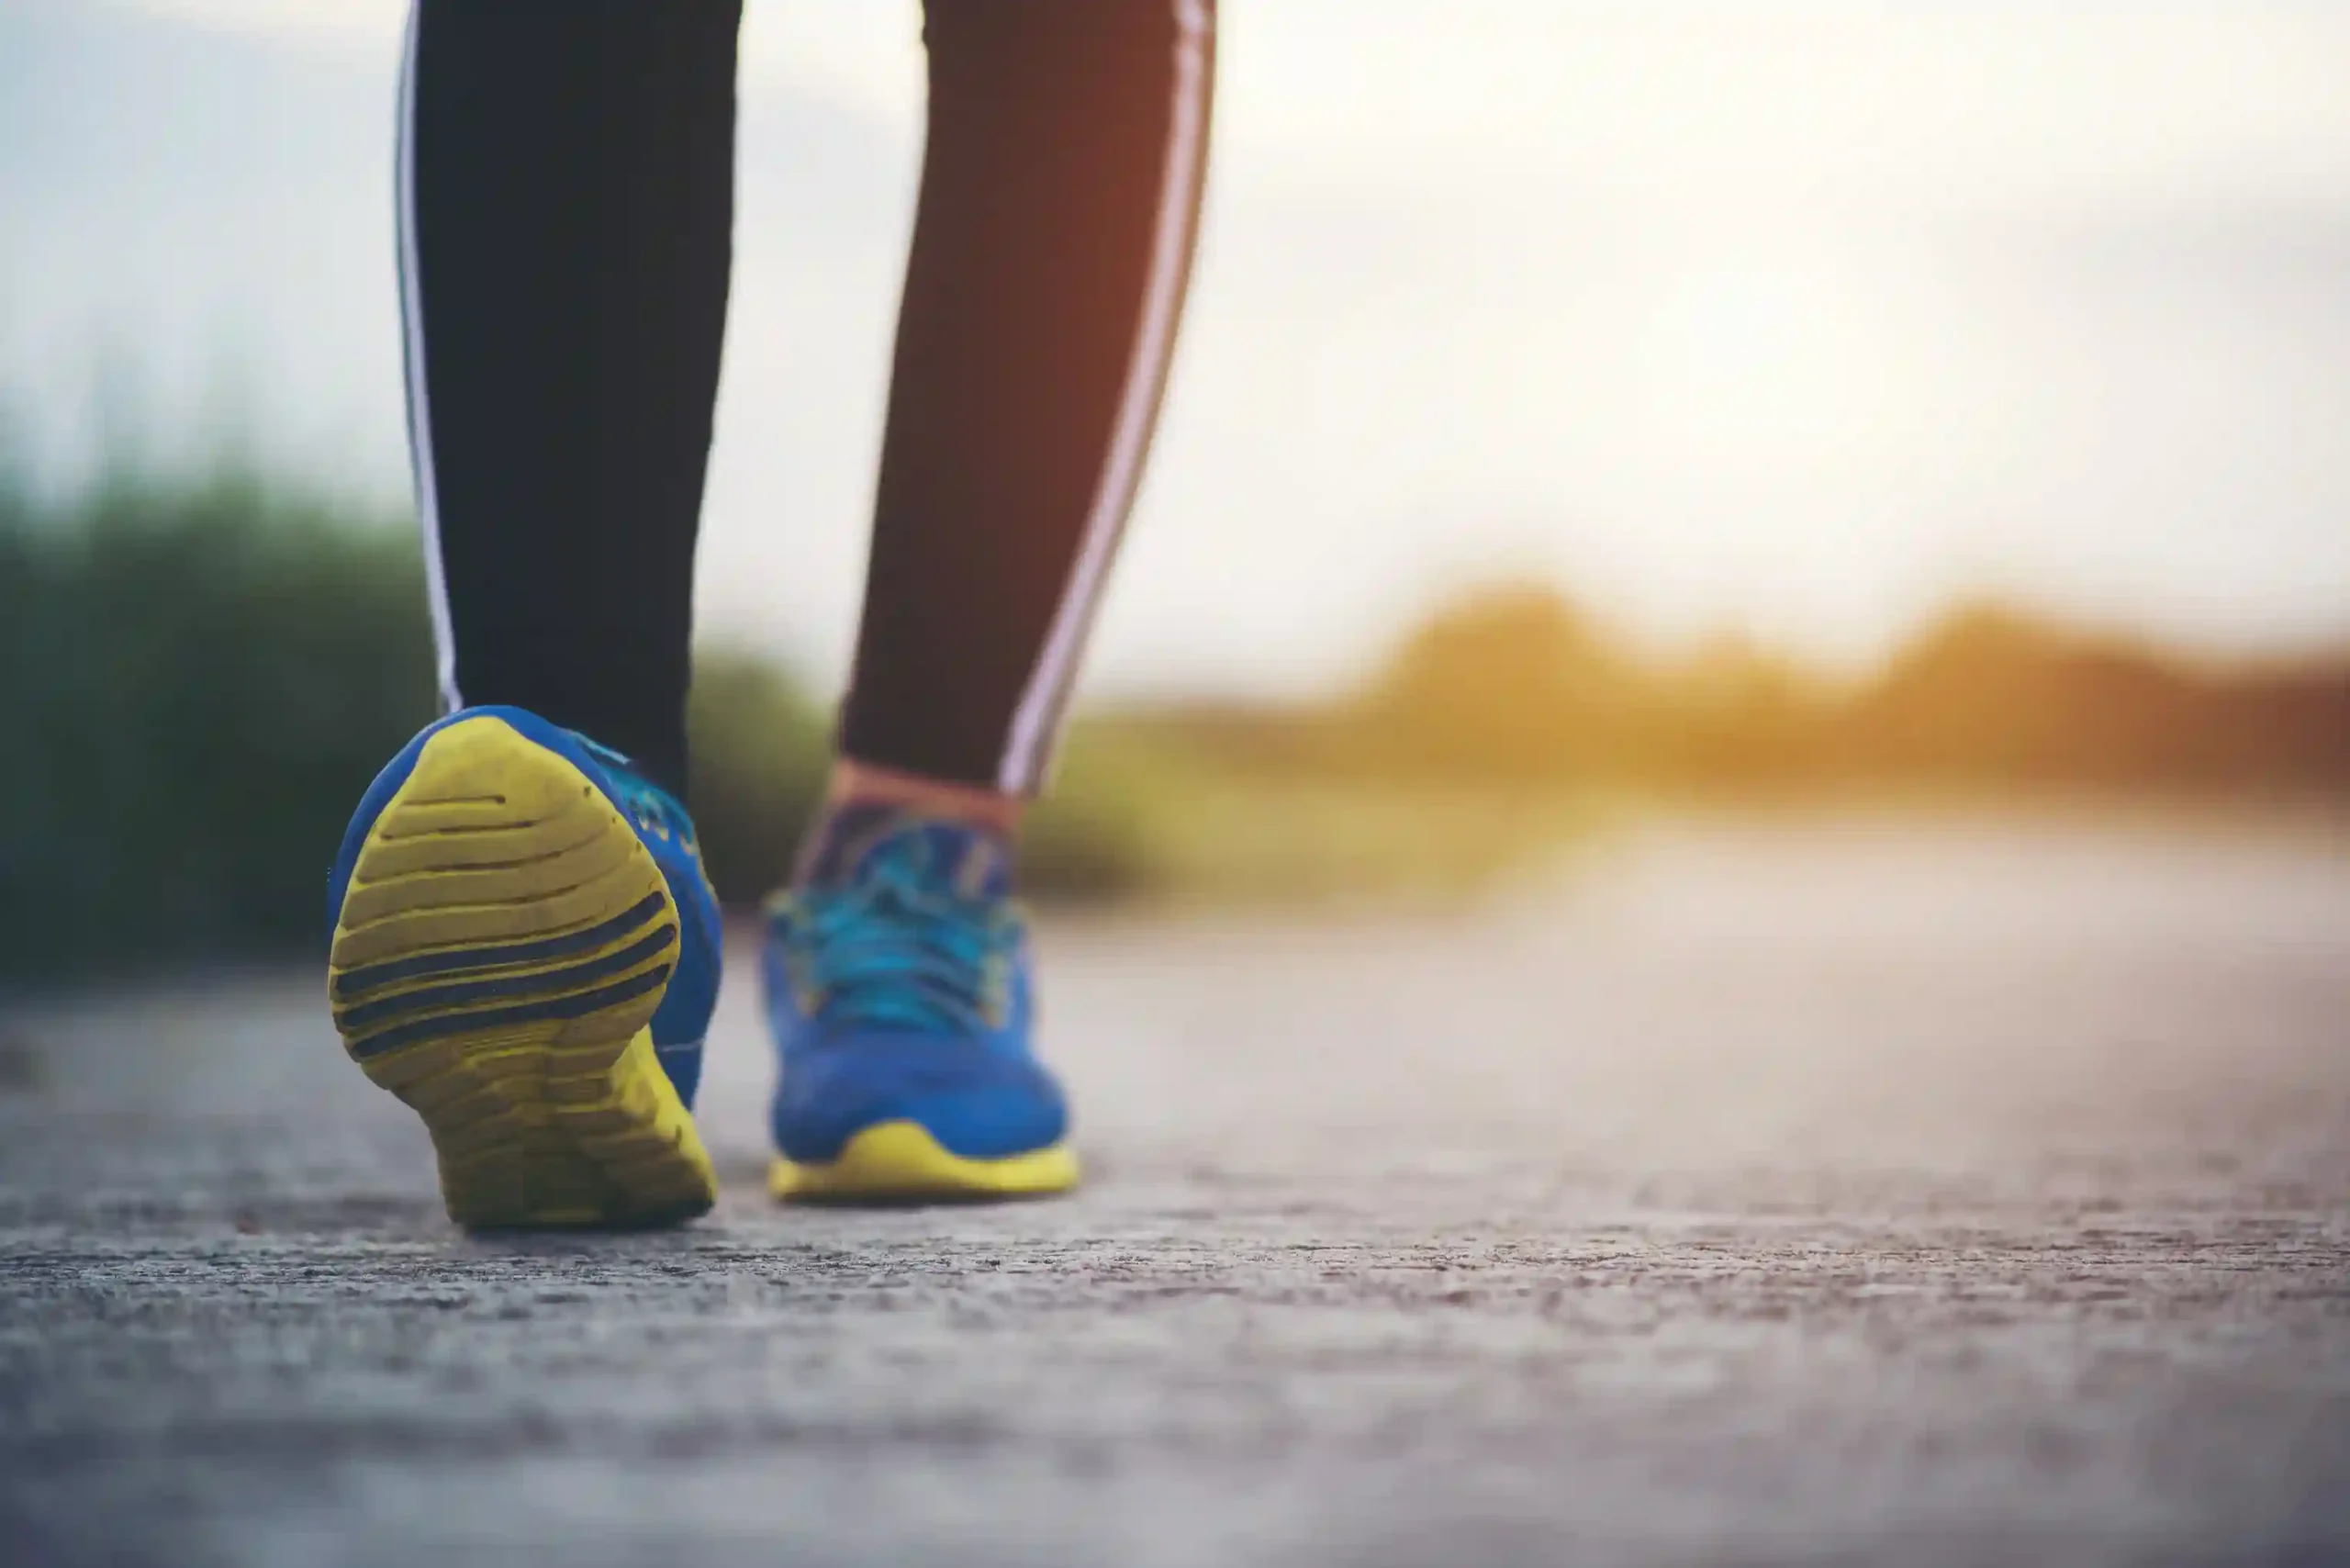 پیاده روی می تواند افسردگی و اضطراب را درمان کند